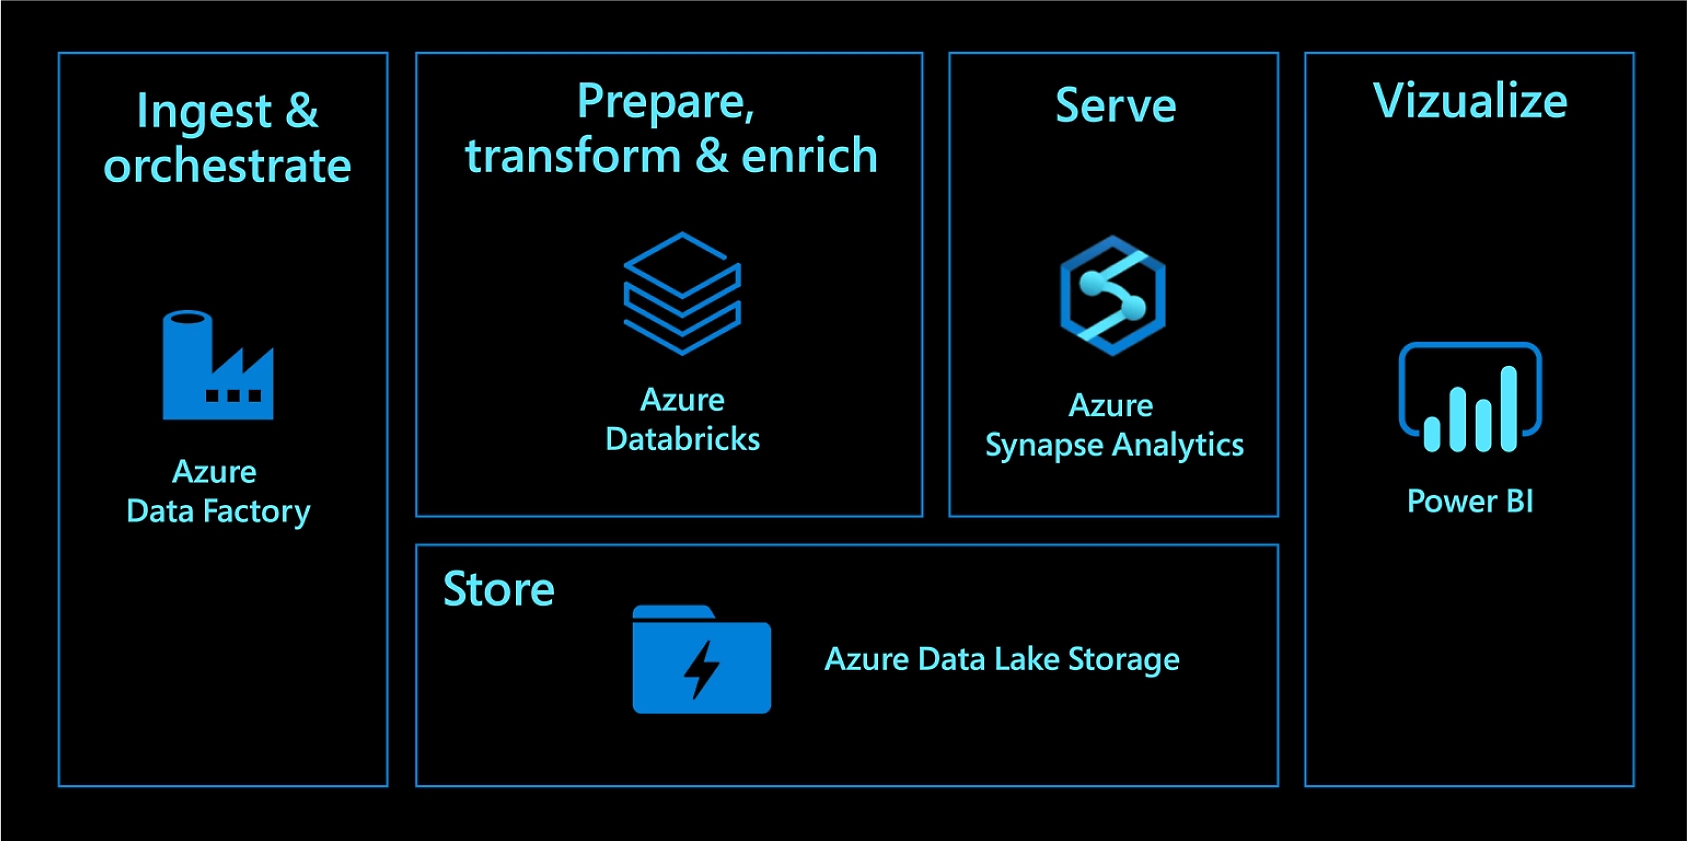 Opnemen en organiseren met Azure Data Factory. Voorbereiden, transformeren en verrijken met Azure Databricks. Leveren met Azure Synapse Analytics. Opslaan met Azure Data Lake Storage. Visualiseren met Power BI.